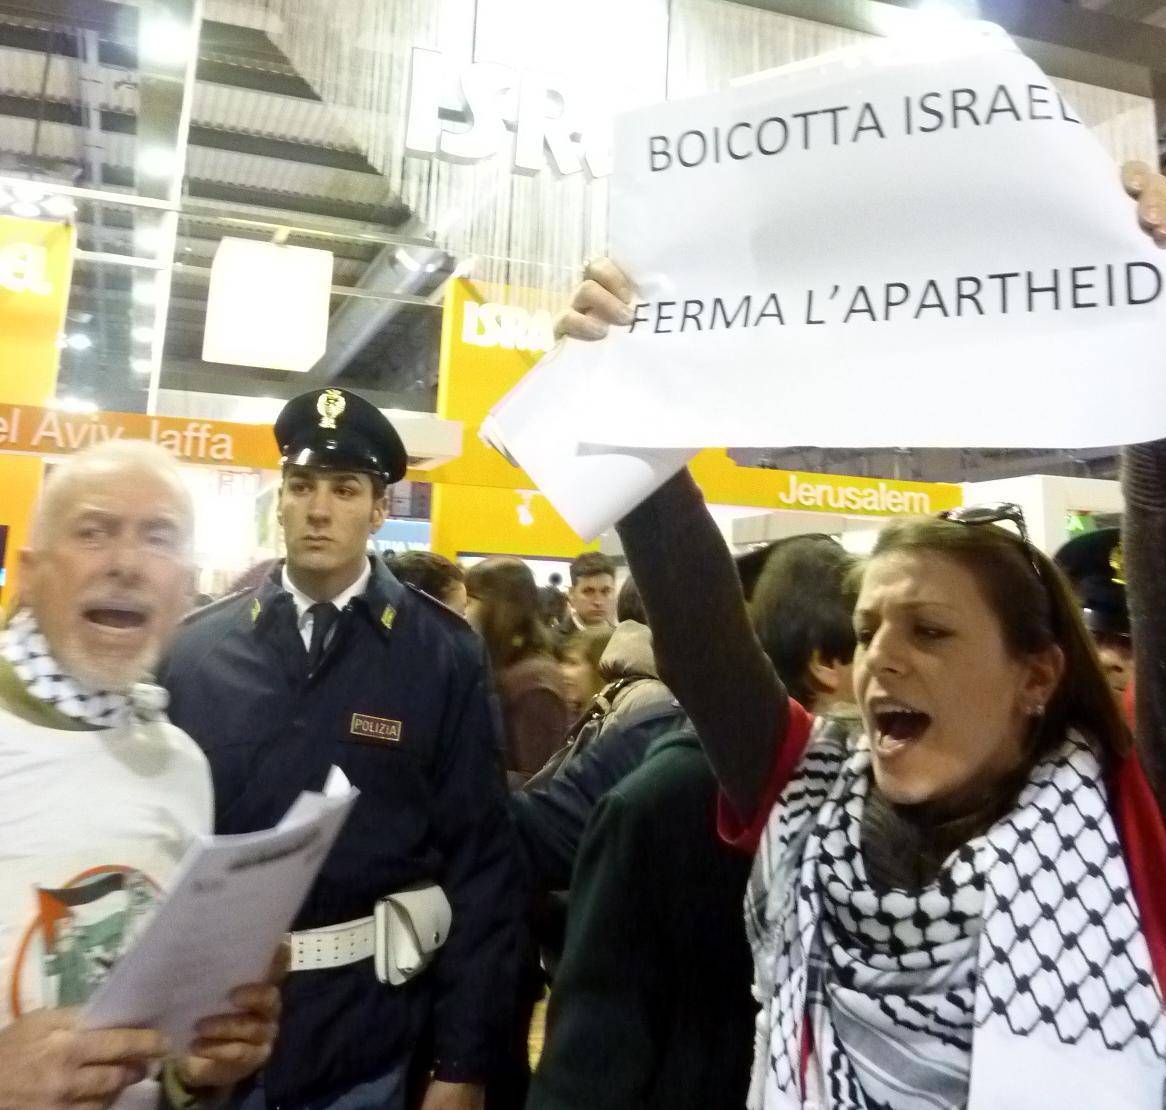 In Fiera protesta contro Israele Arriva la polizia